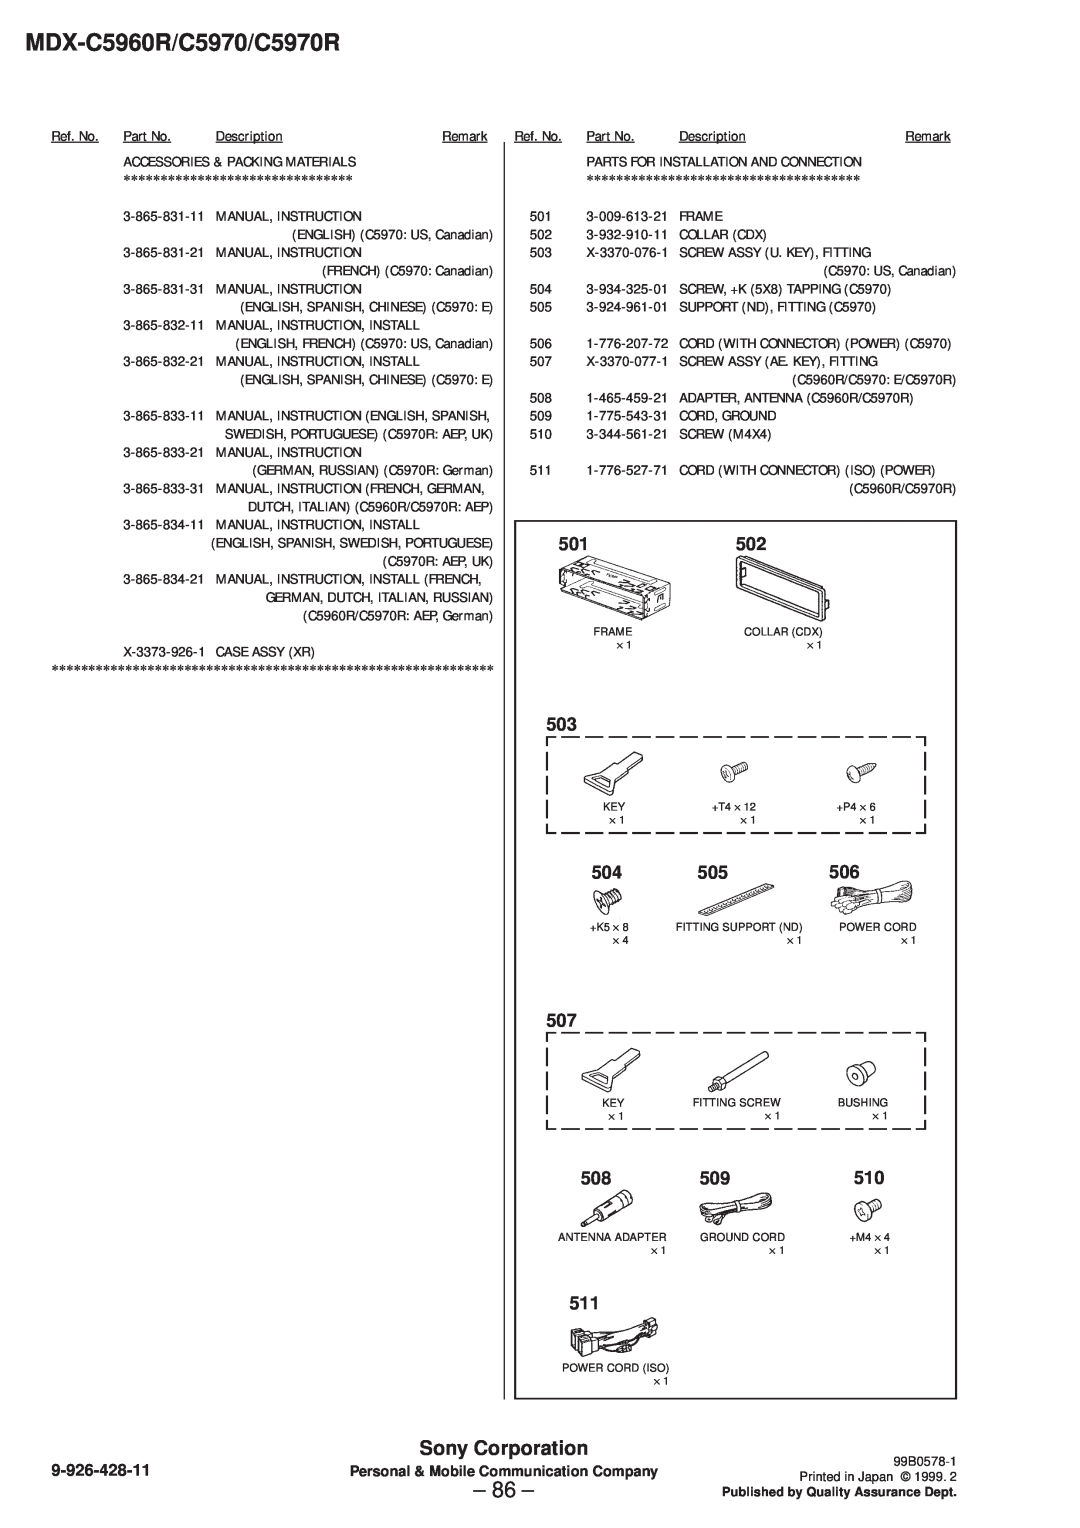 Sony MDX-C5970R service manual 86, 501502, MDX-C5960R/C5970/C5970R, Sony Corporation 